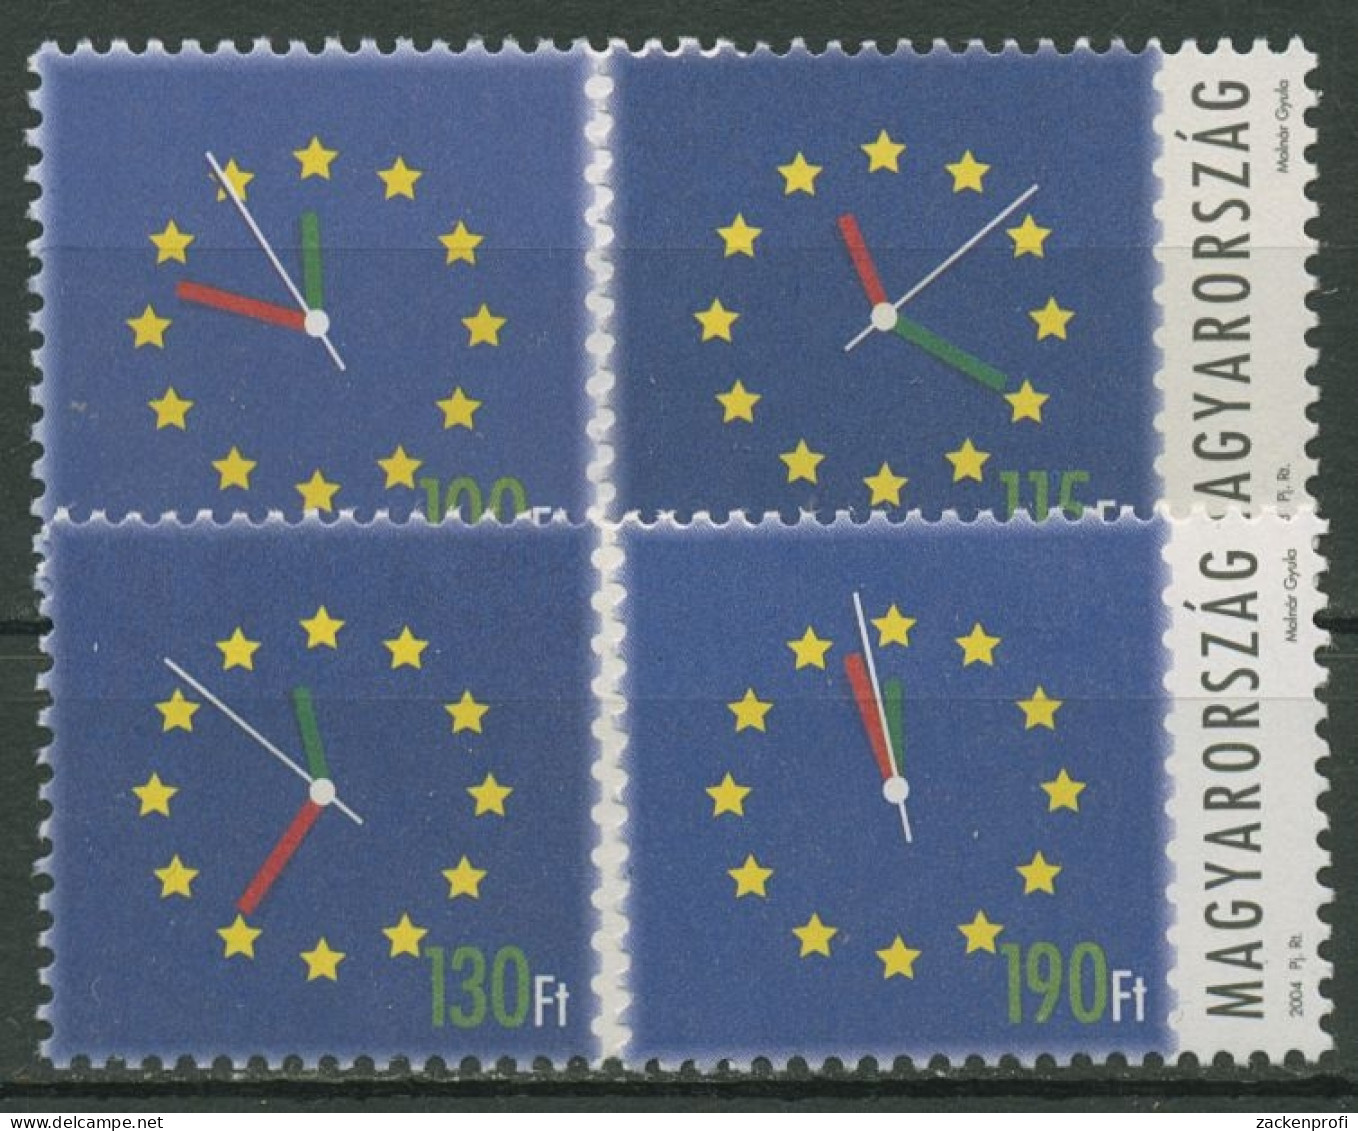 Ungarn 2003/04 Europä.Union Ziffernblatt 4808, 4814, 4837, 4844 Postfrisch - Nuovi